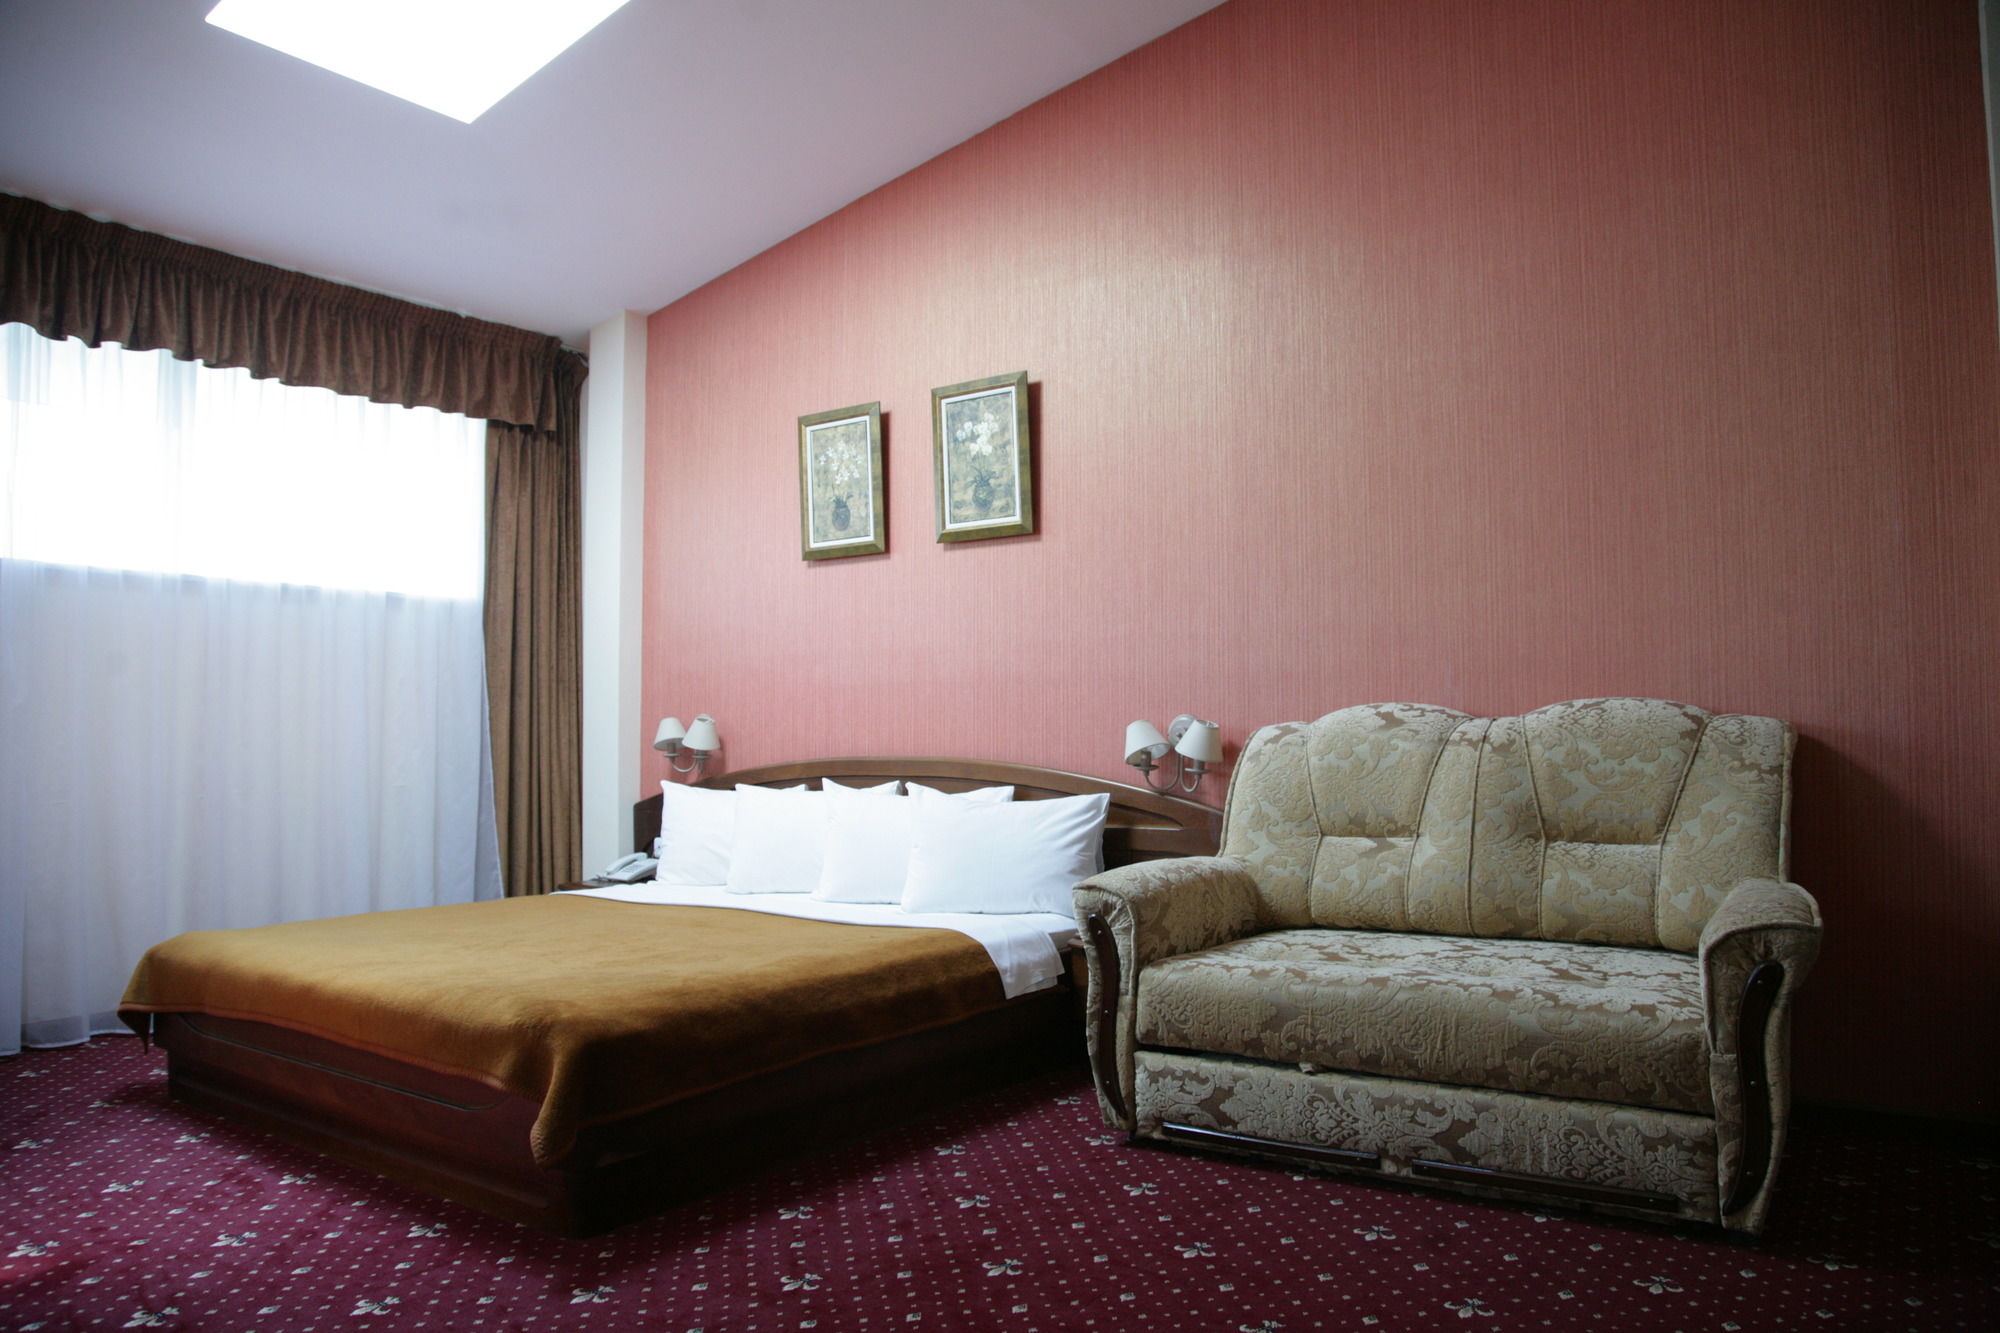 Ararat Hotel